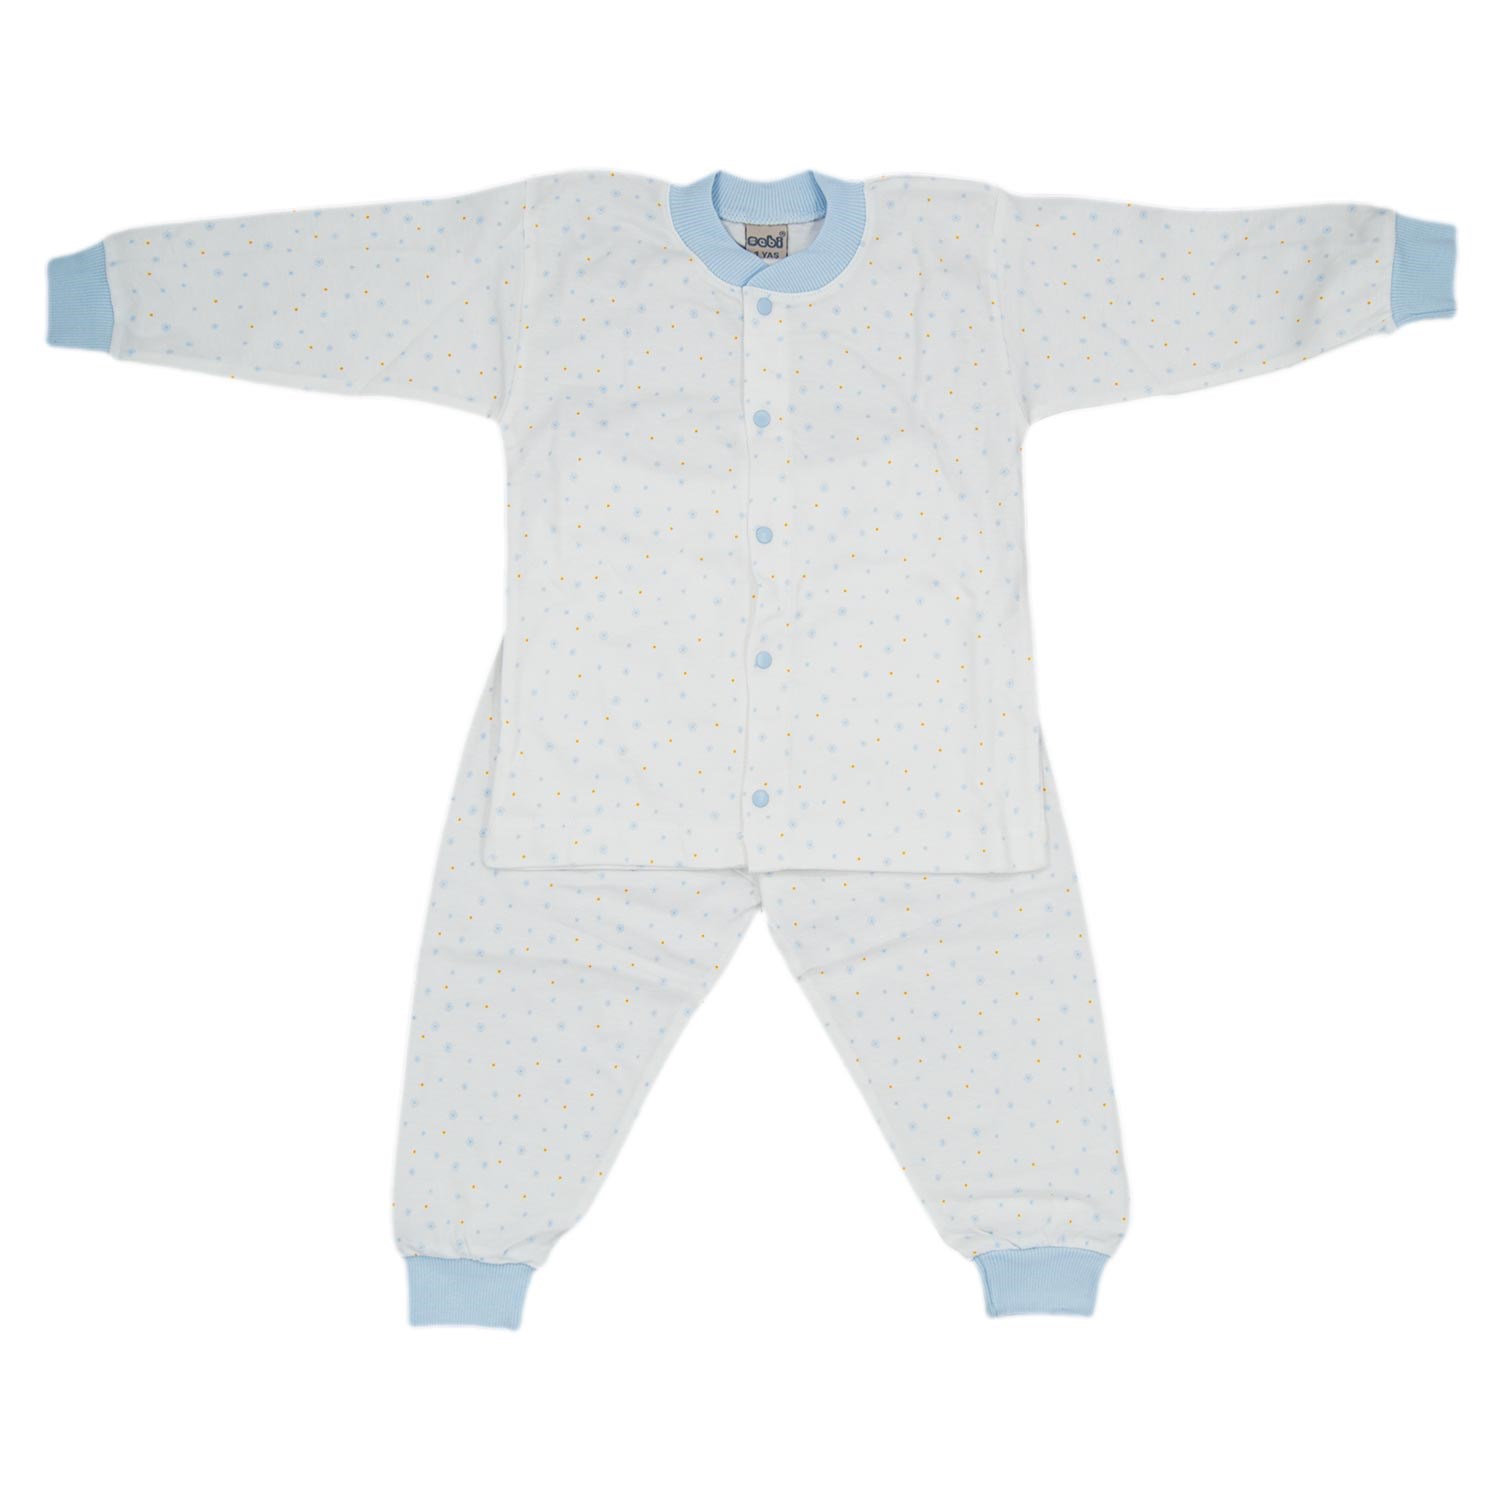 Sebi Bebe Kartanesi Bebek Pijama Takımı 2413 Krem-Mavi